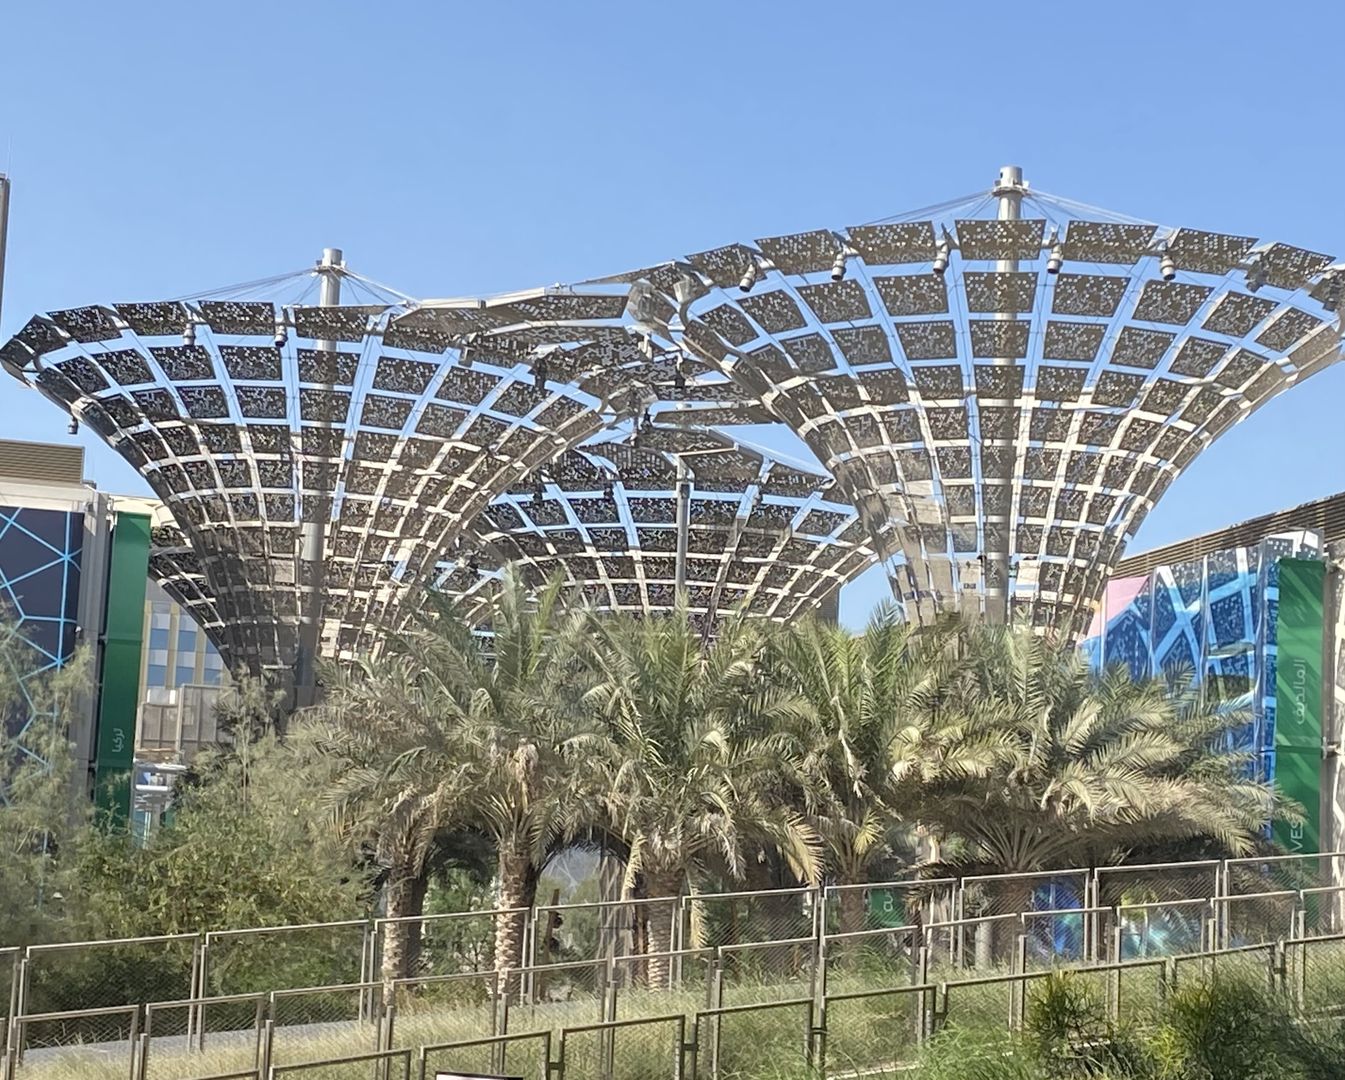 Basishafen der Virtuosa ist im Winter 2021/2022 Dubai, Gastgeber der Expo 2020